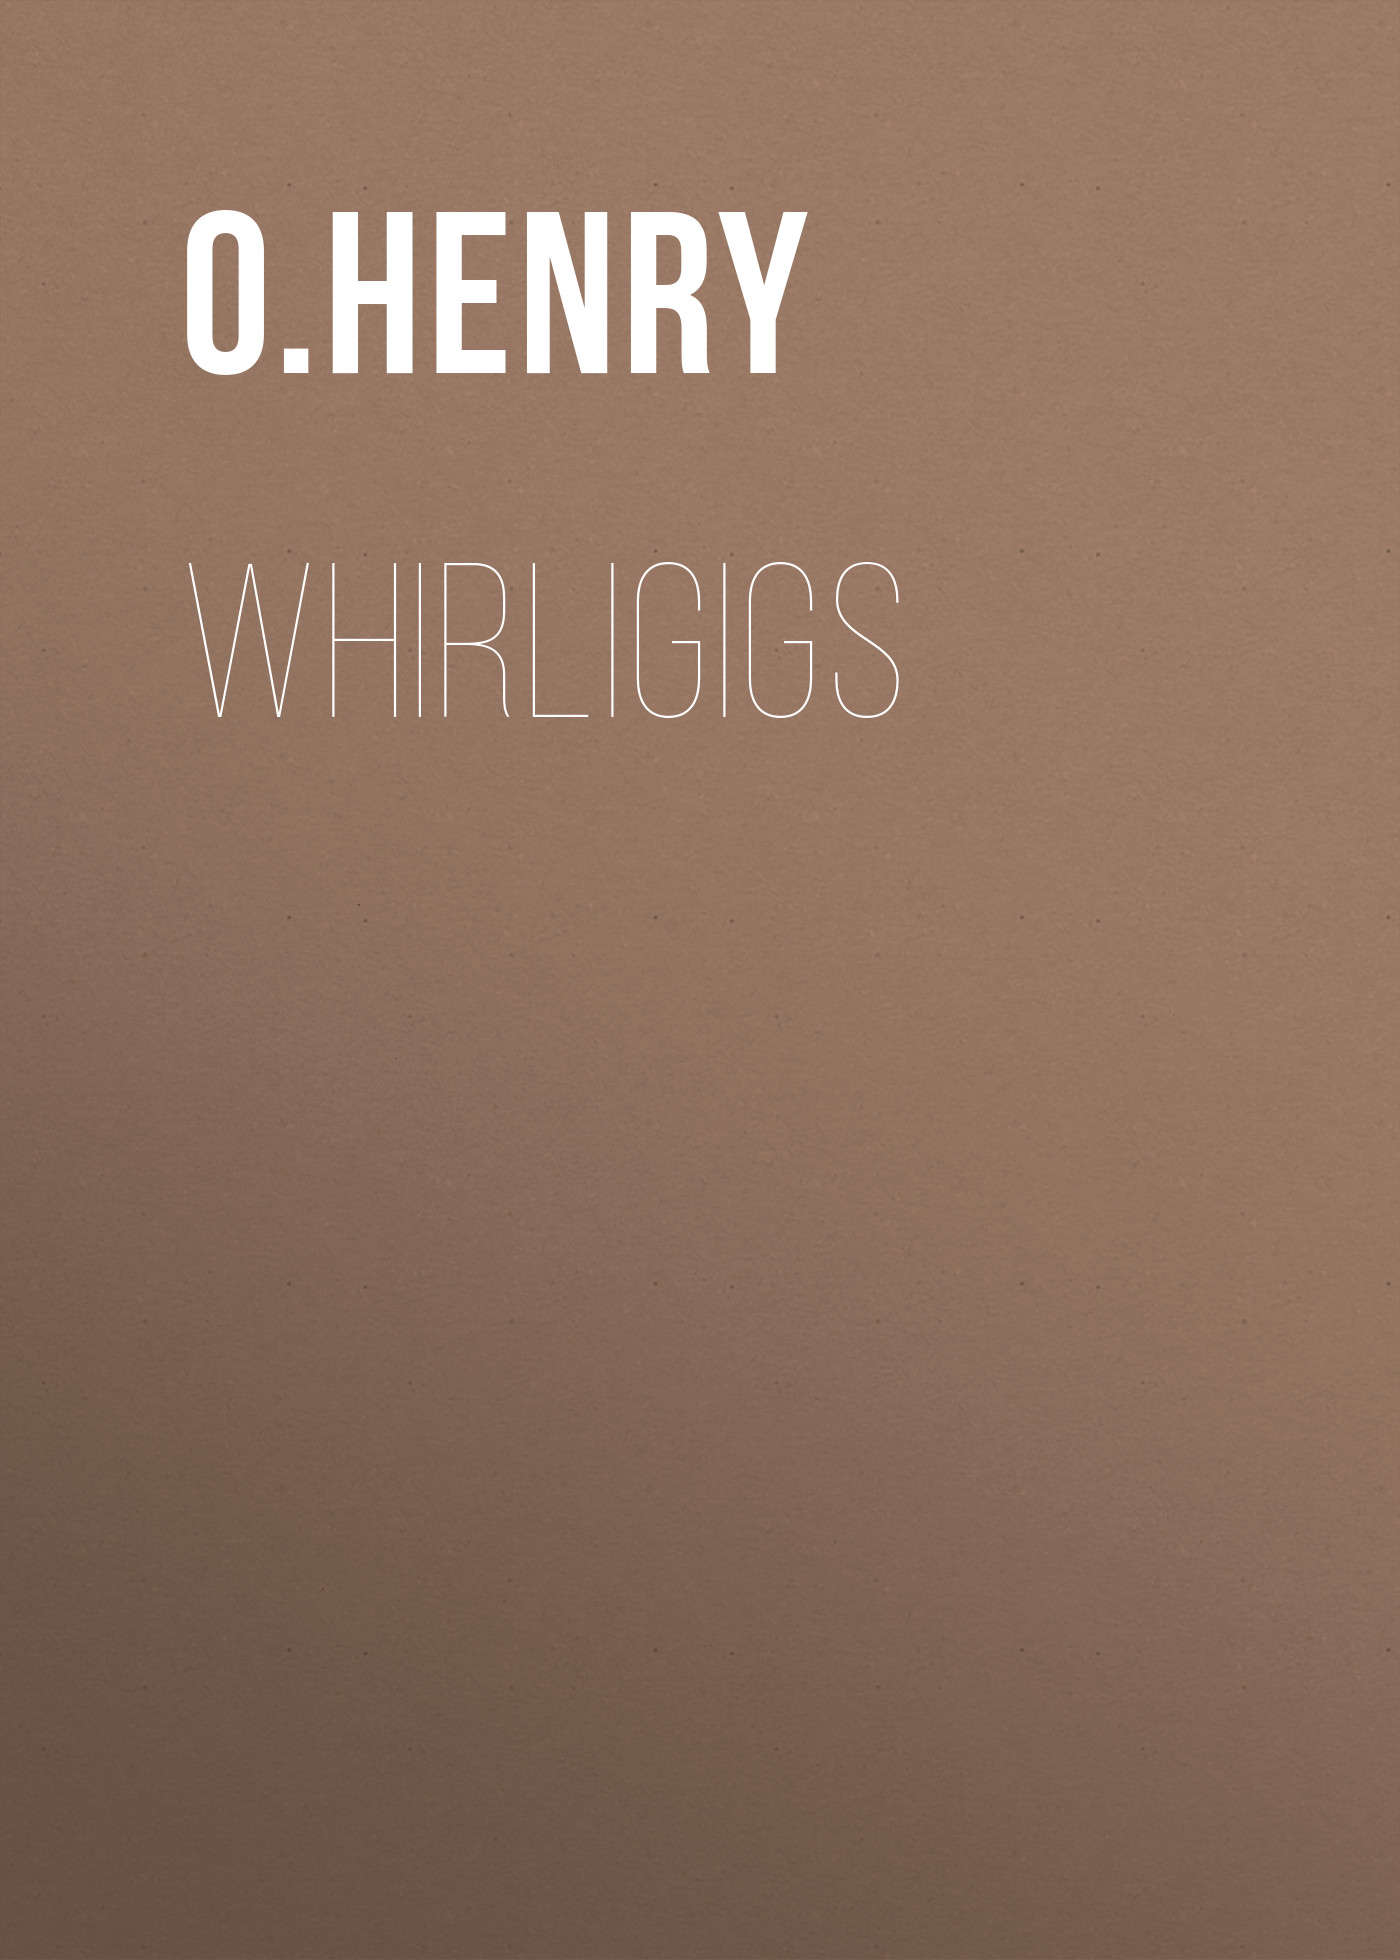 Книга Whirligigs из серии , созданная O. Henry, может относится к жанру Литература 20 века, Зарубежная классика. Стоимость электронной книги Whirligigs с идентификатором 25560780 составляет 0 руб.